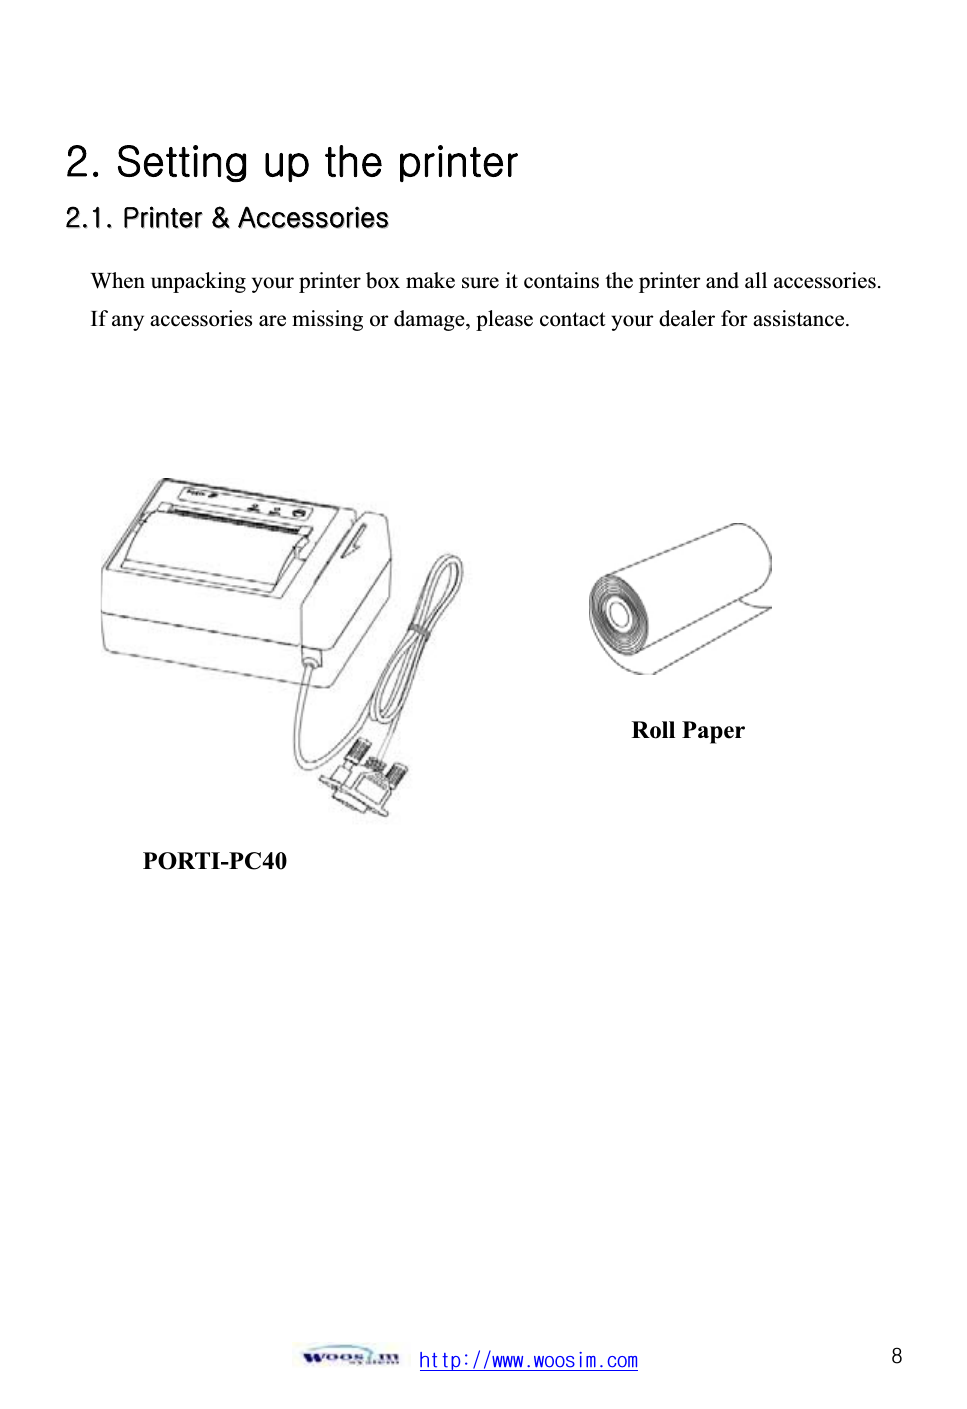 ٻۃۏۏۋڕڊڊےےےډےۊۊێۄۈډھۊۈٻړYUGzGGGG GGYYUUXXUUGGwwGGMMGGhhGGٻٻٻٻٻٻٻٻٻٻٻٻٻٻٻٻٻٻٻٻٻٻٻٻٻٻٻWhen unpacking your printer box make sure it contains the printer and all accessories. If any accessories are missing or damage, please contact your dealer for assistance. ٻٻٻٻٻٻٻٻٻٻٻٻٻPORTI-PC40 Roll Paper ٻ